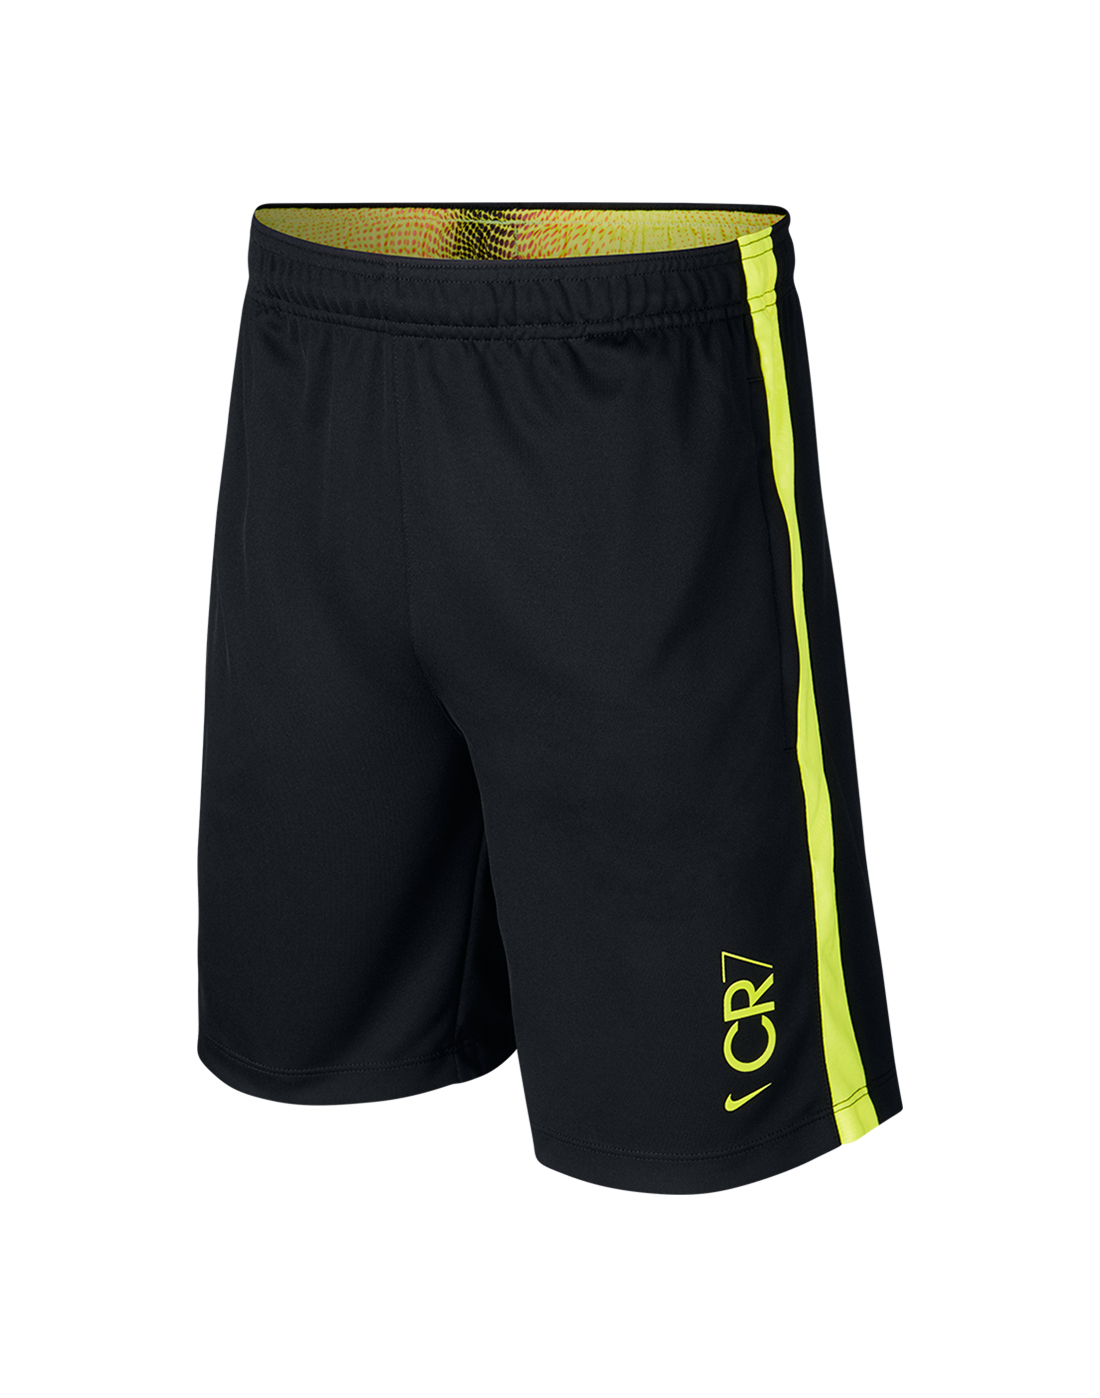 Nike Older Kids CR7 Shorts - Black | Life Style Sports UK